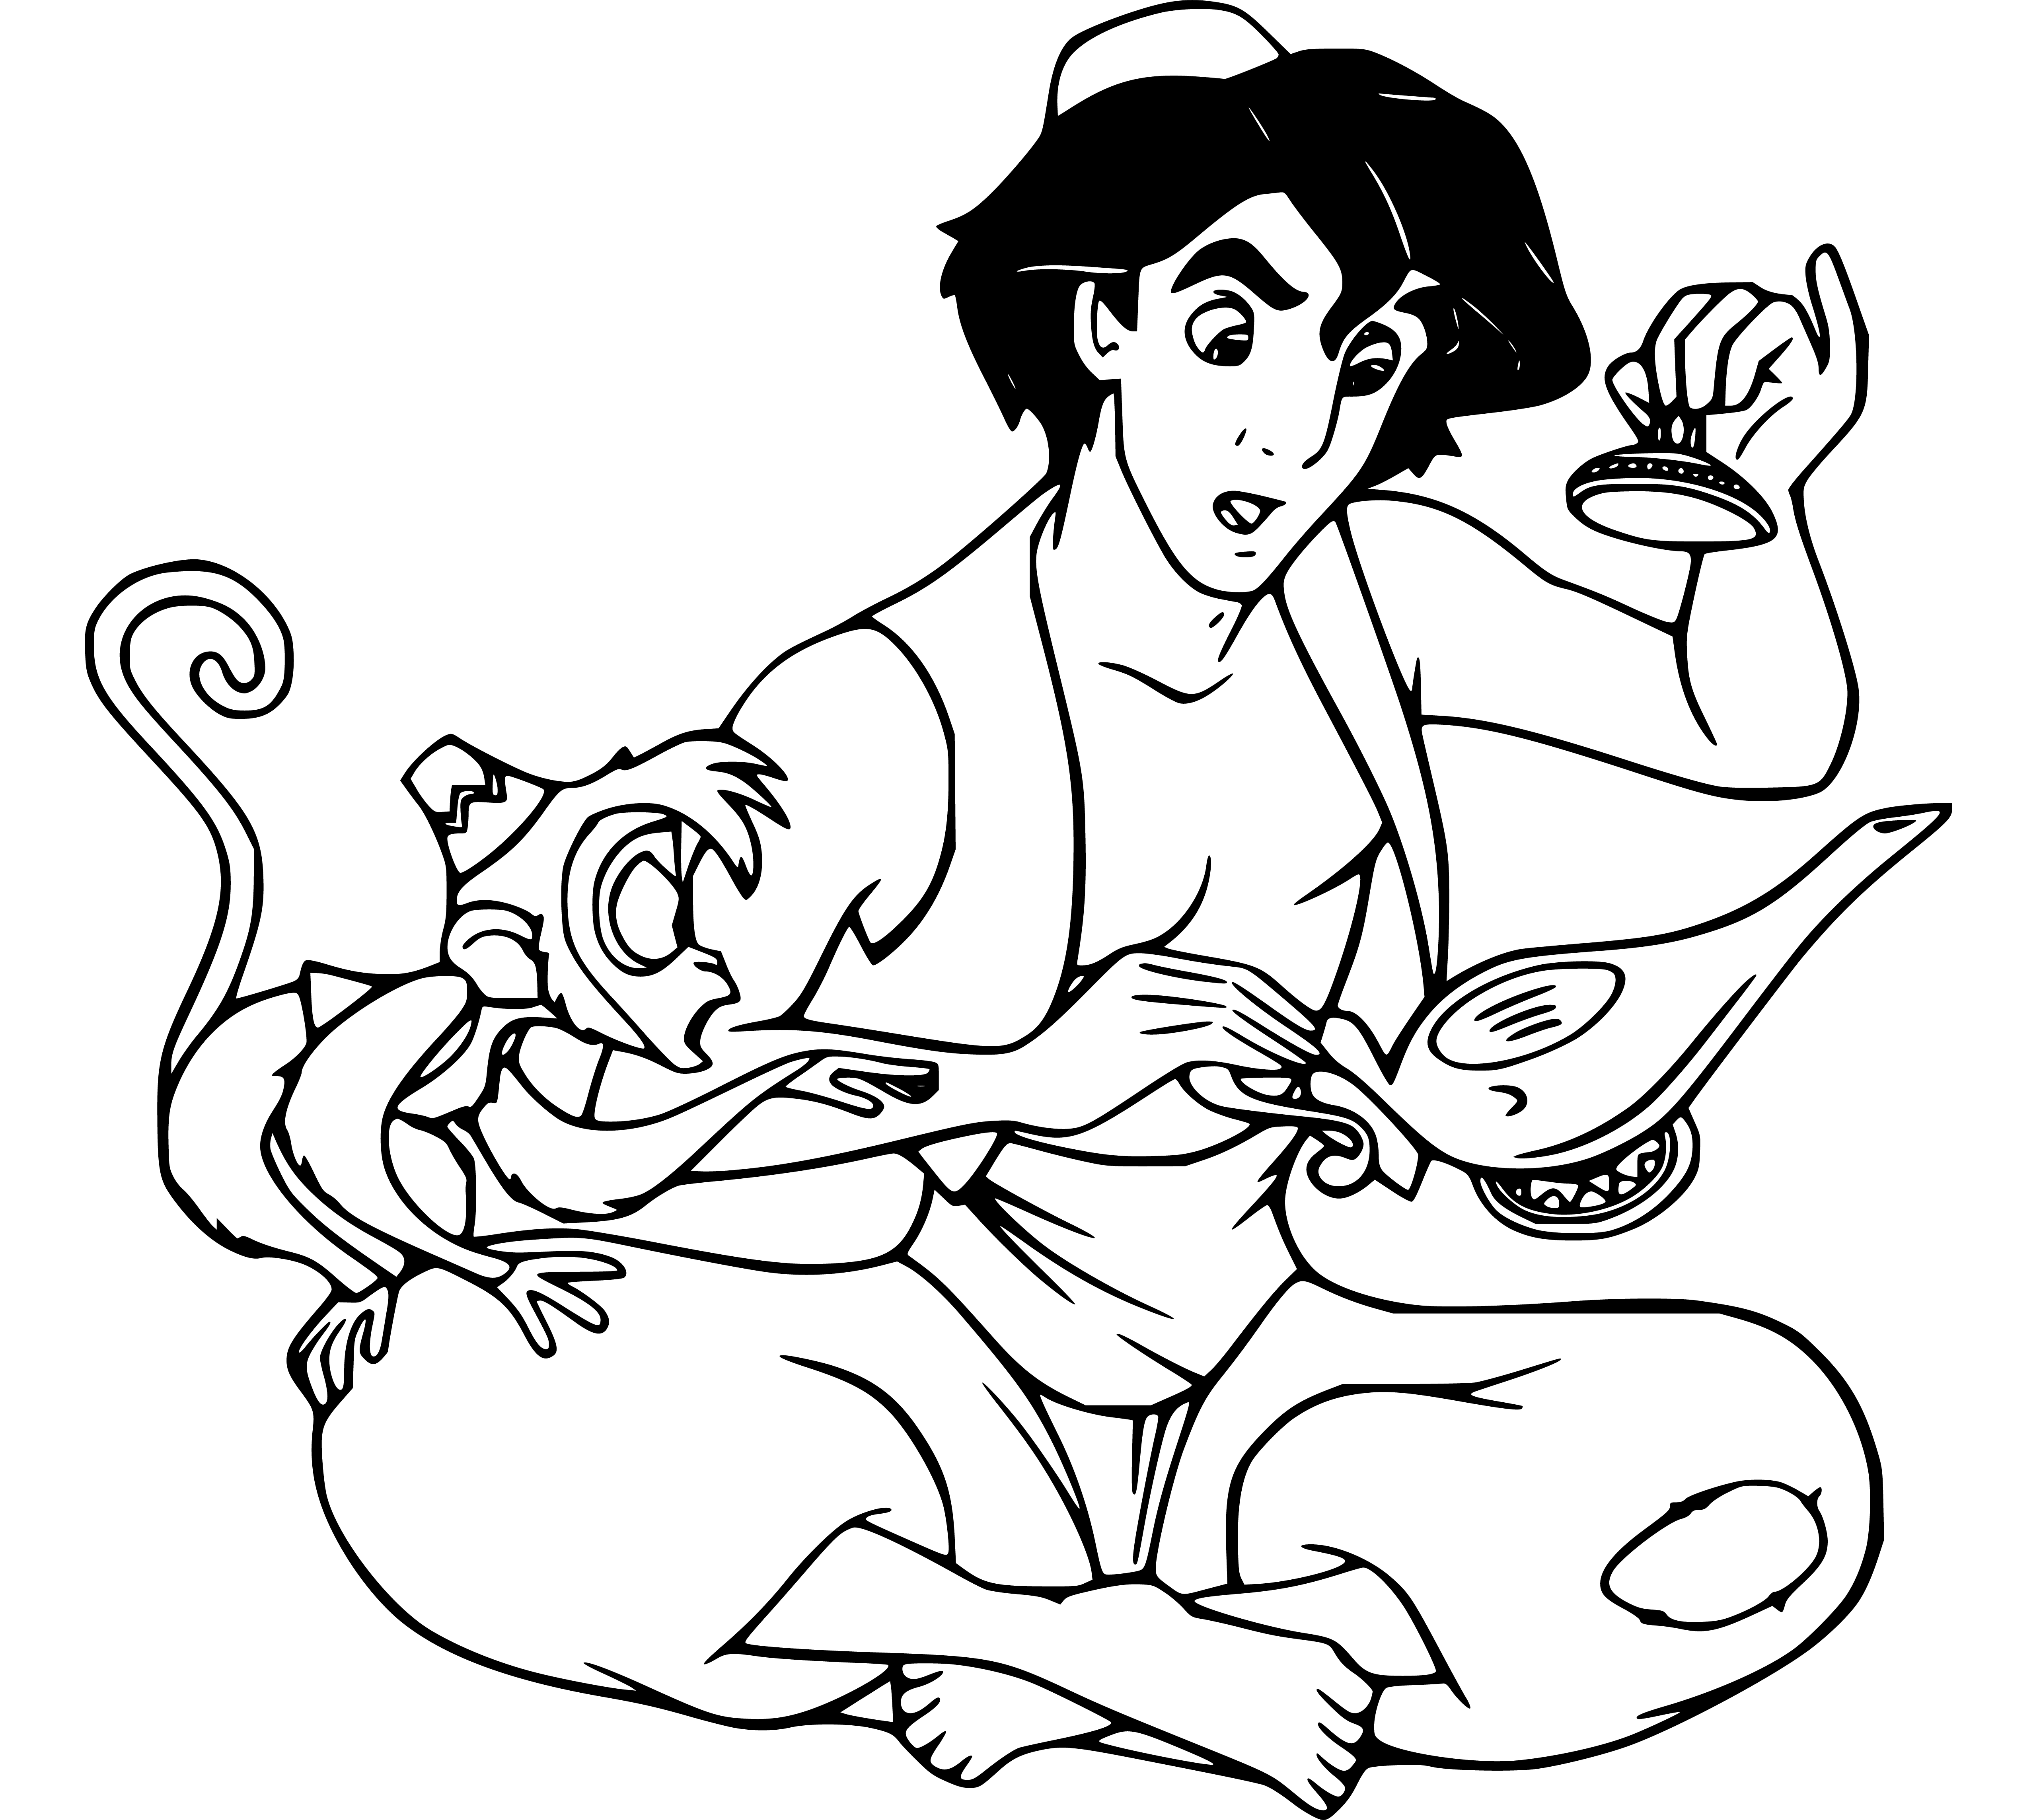 Aladdin and Magic Lamb Coloring Page for Kids Printable - SheetalColor.com